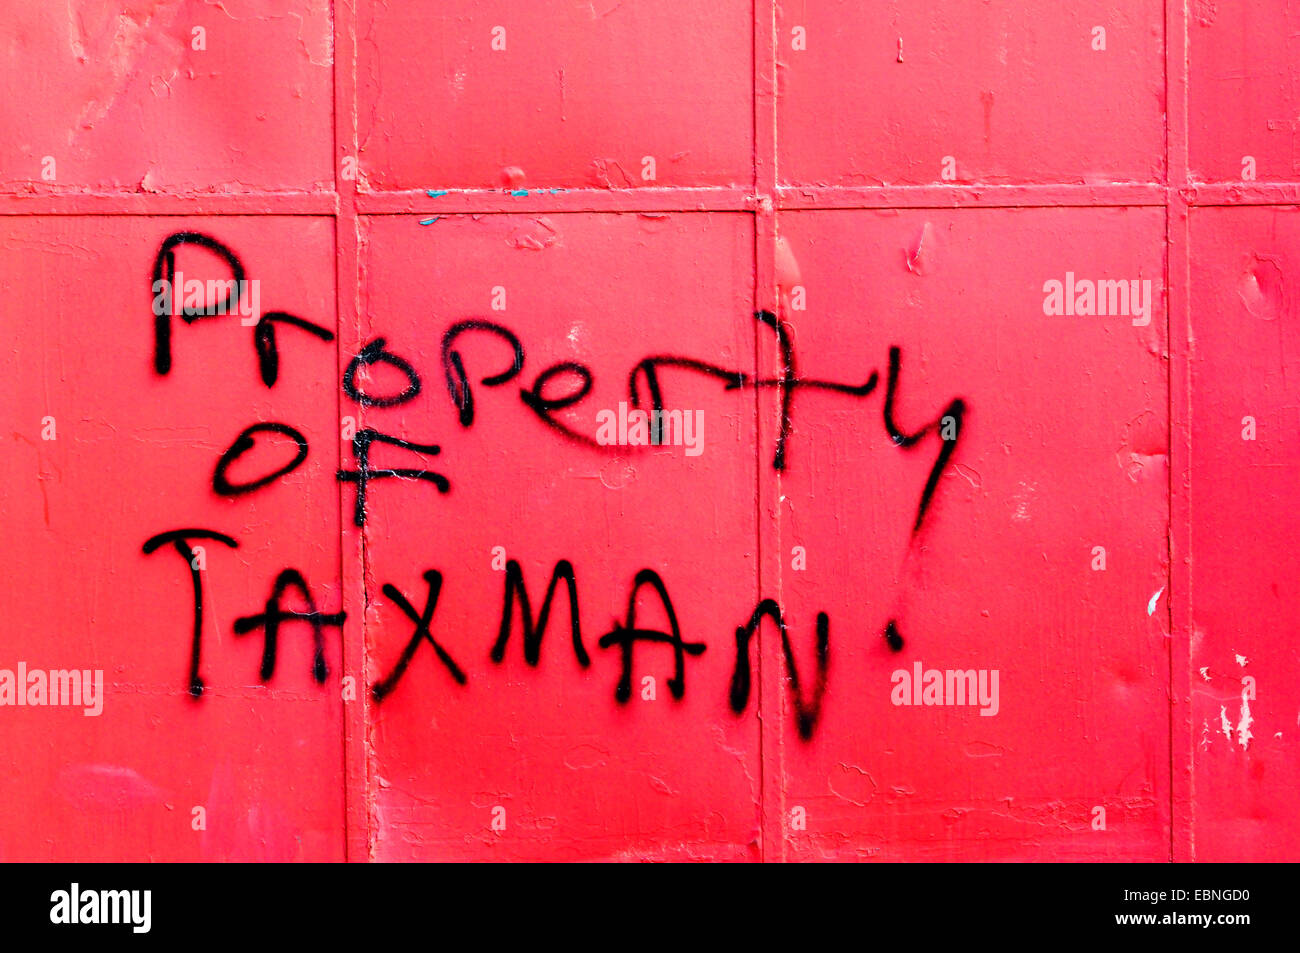 Propriété de Taxman graffitis sur des capacités à Bromley, dans le sud de Londres. Banque D'Images